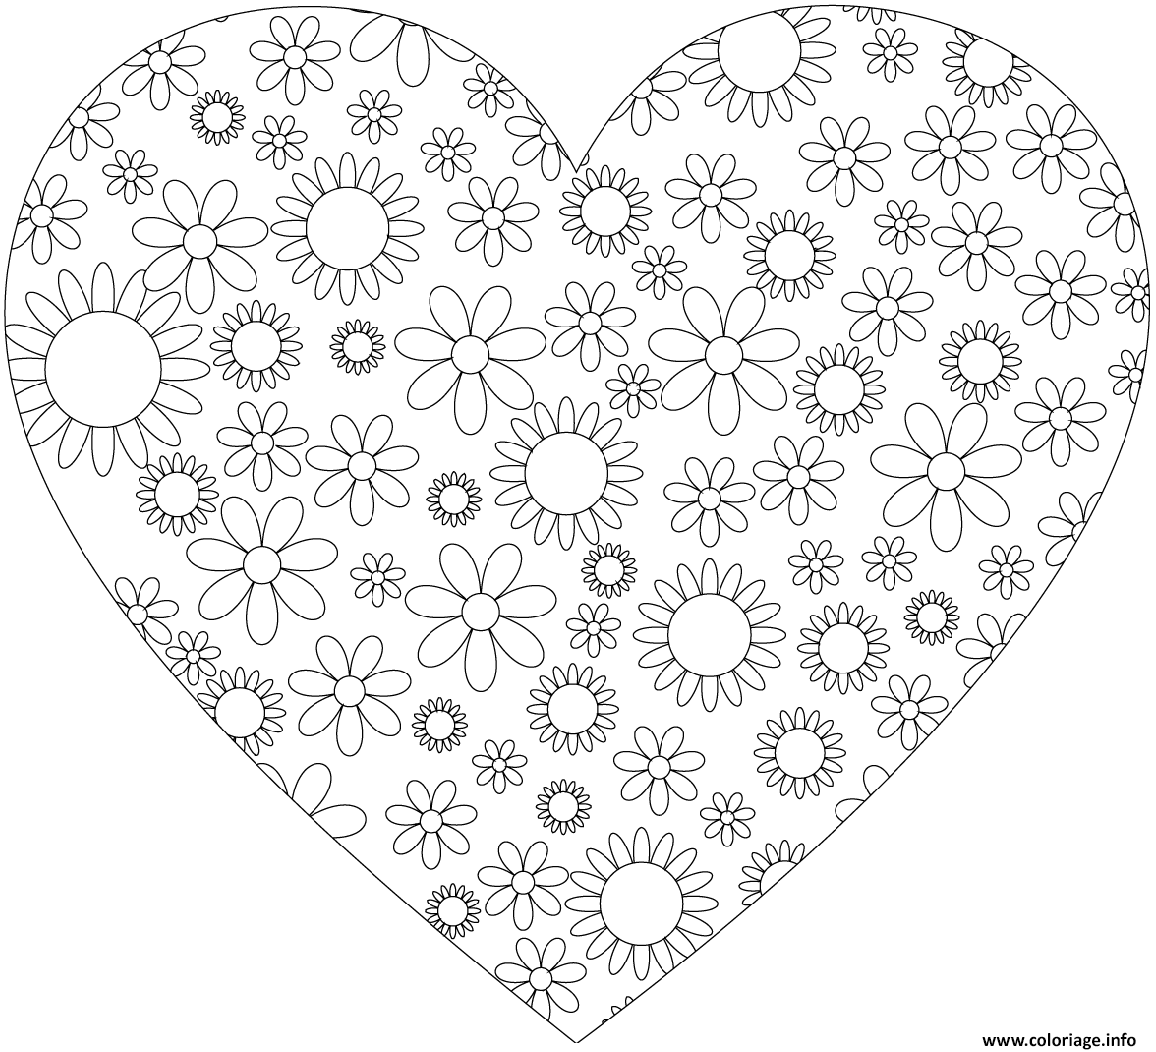 Coloriage Coeur Simple Avec Motifs De Fleurs Dessin Coeur à imprimer